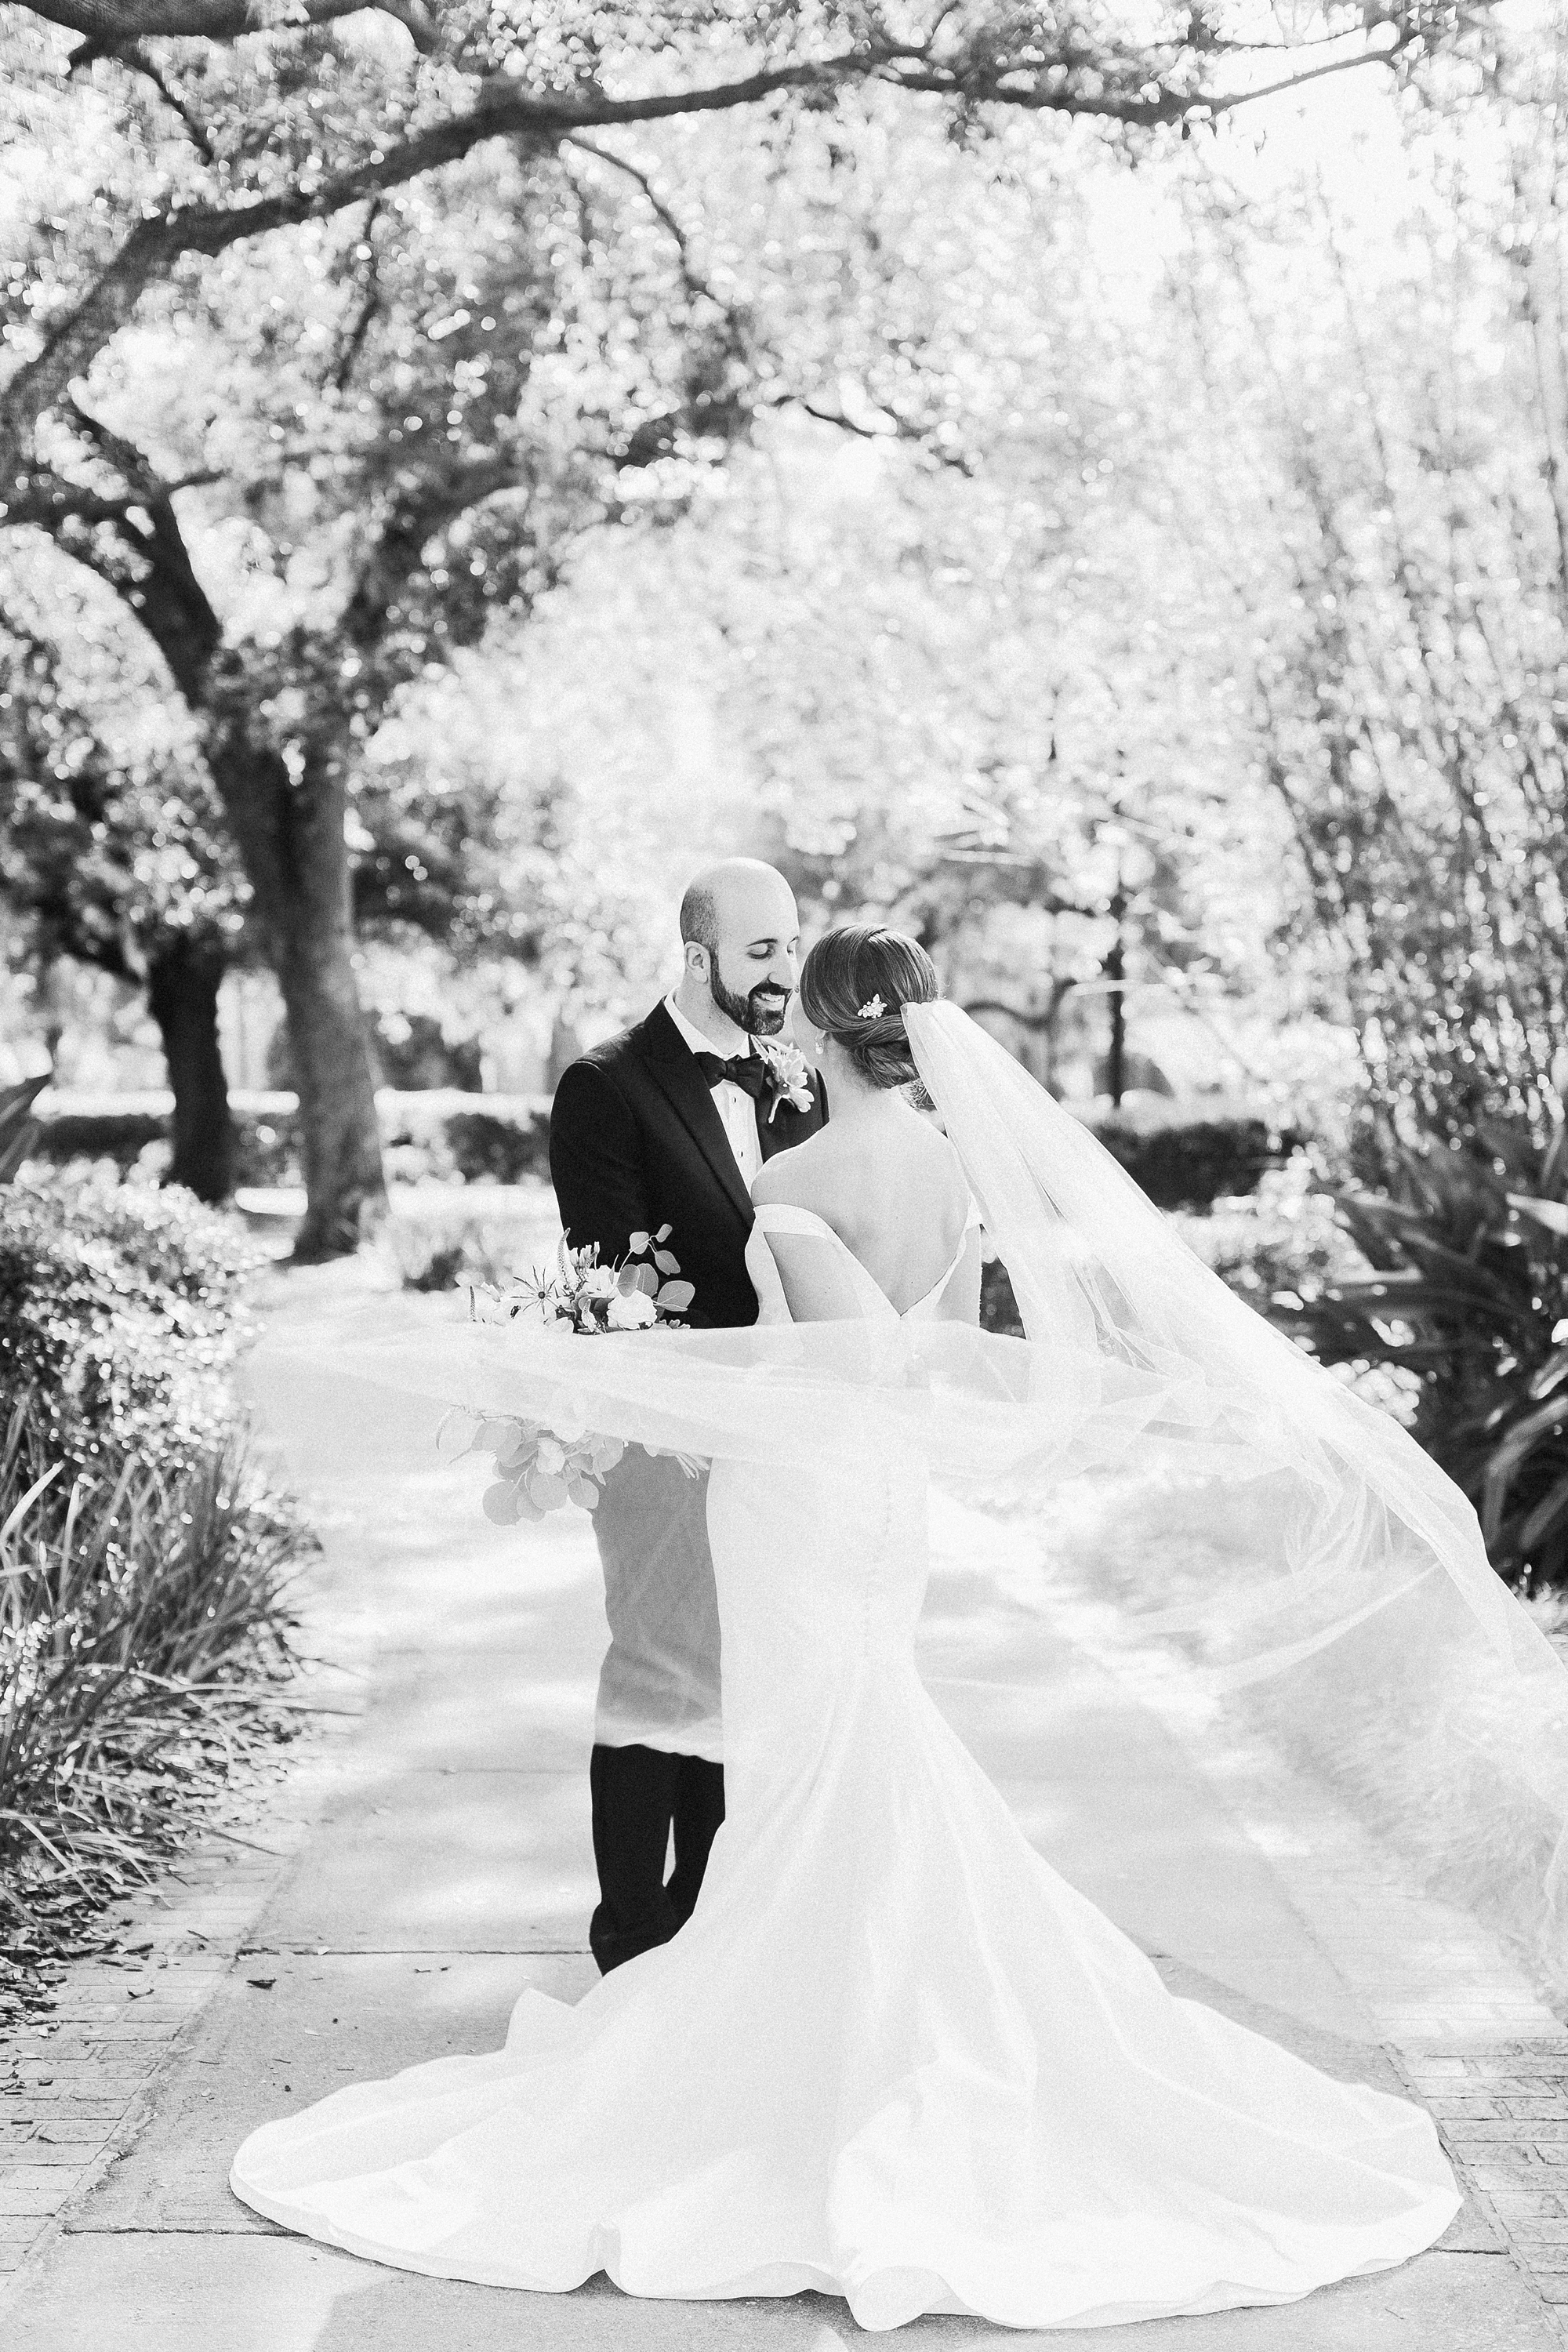 Oxford Exchange Wedding Photographer | © Ailyn La Torre Photography 2019